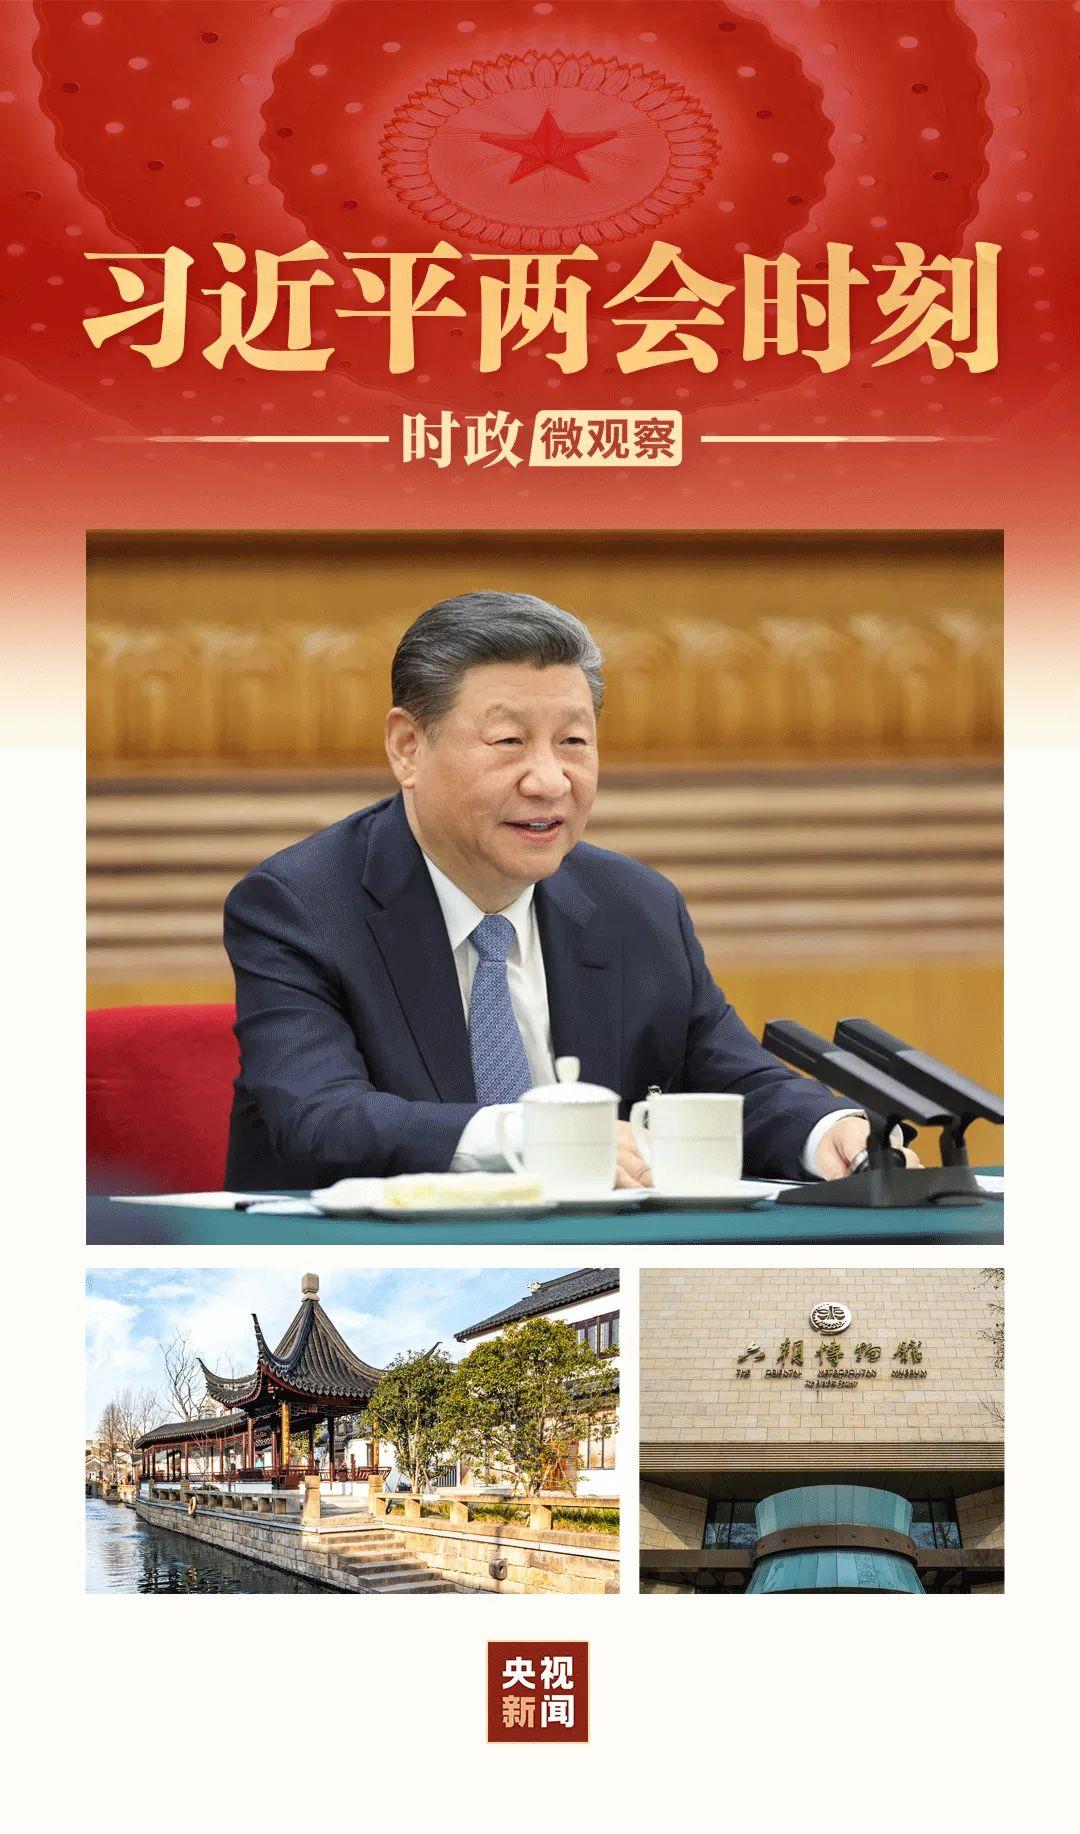 3月5日，在江苏代表团审议现场，全国人大代表、南京市博物总馆副馆长宋燕向习近平总书记讲述了三个小故事。